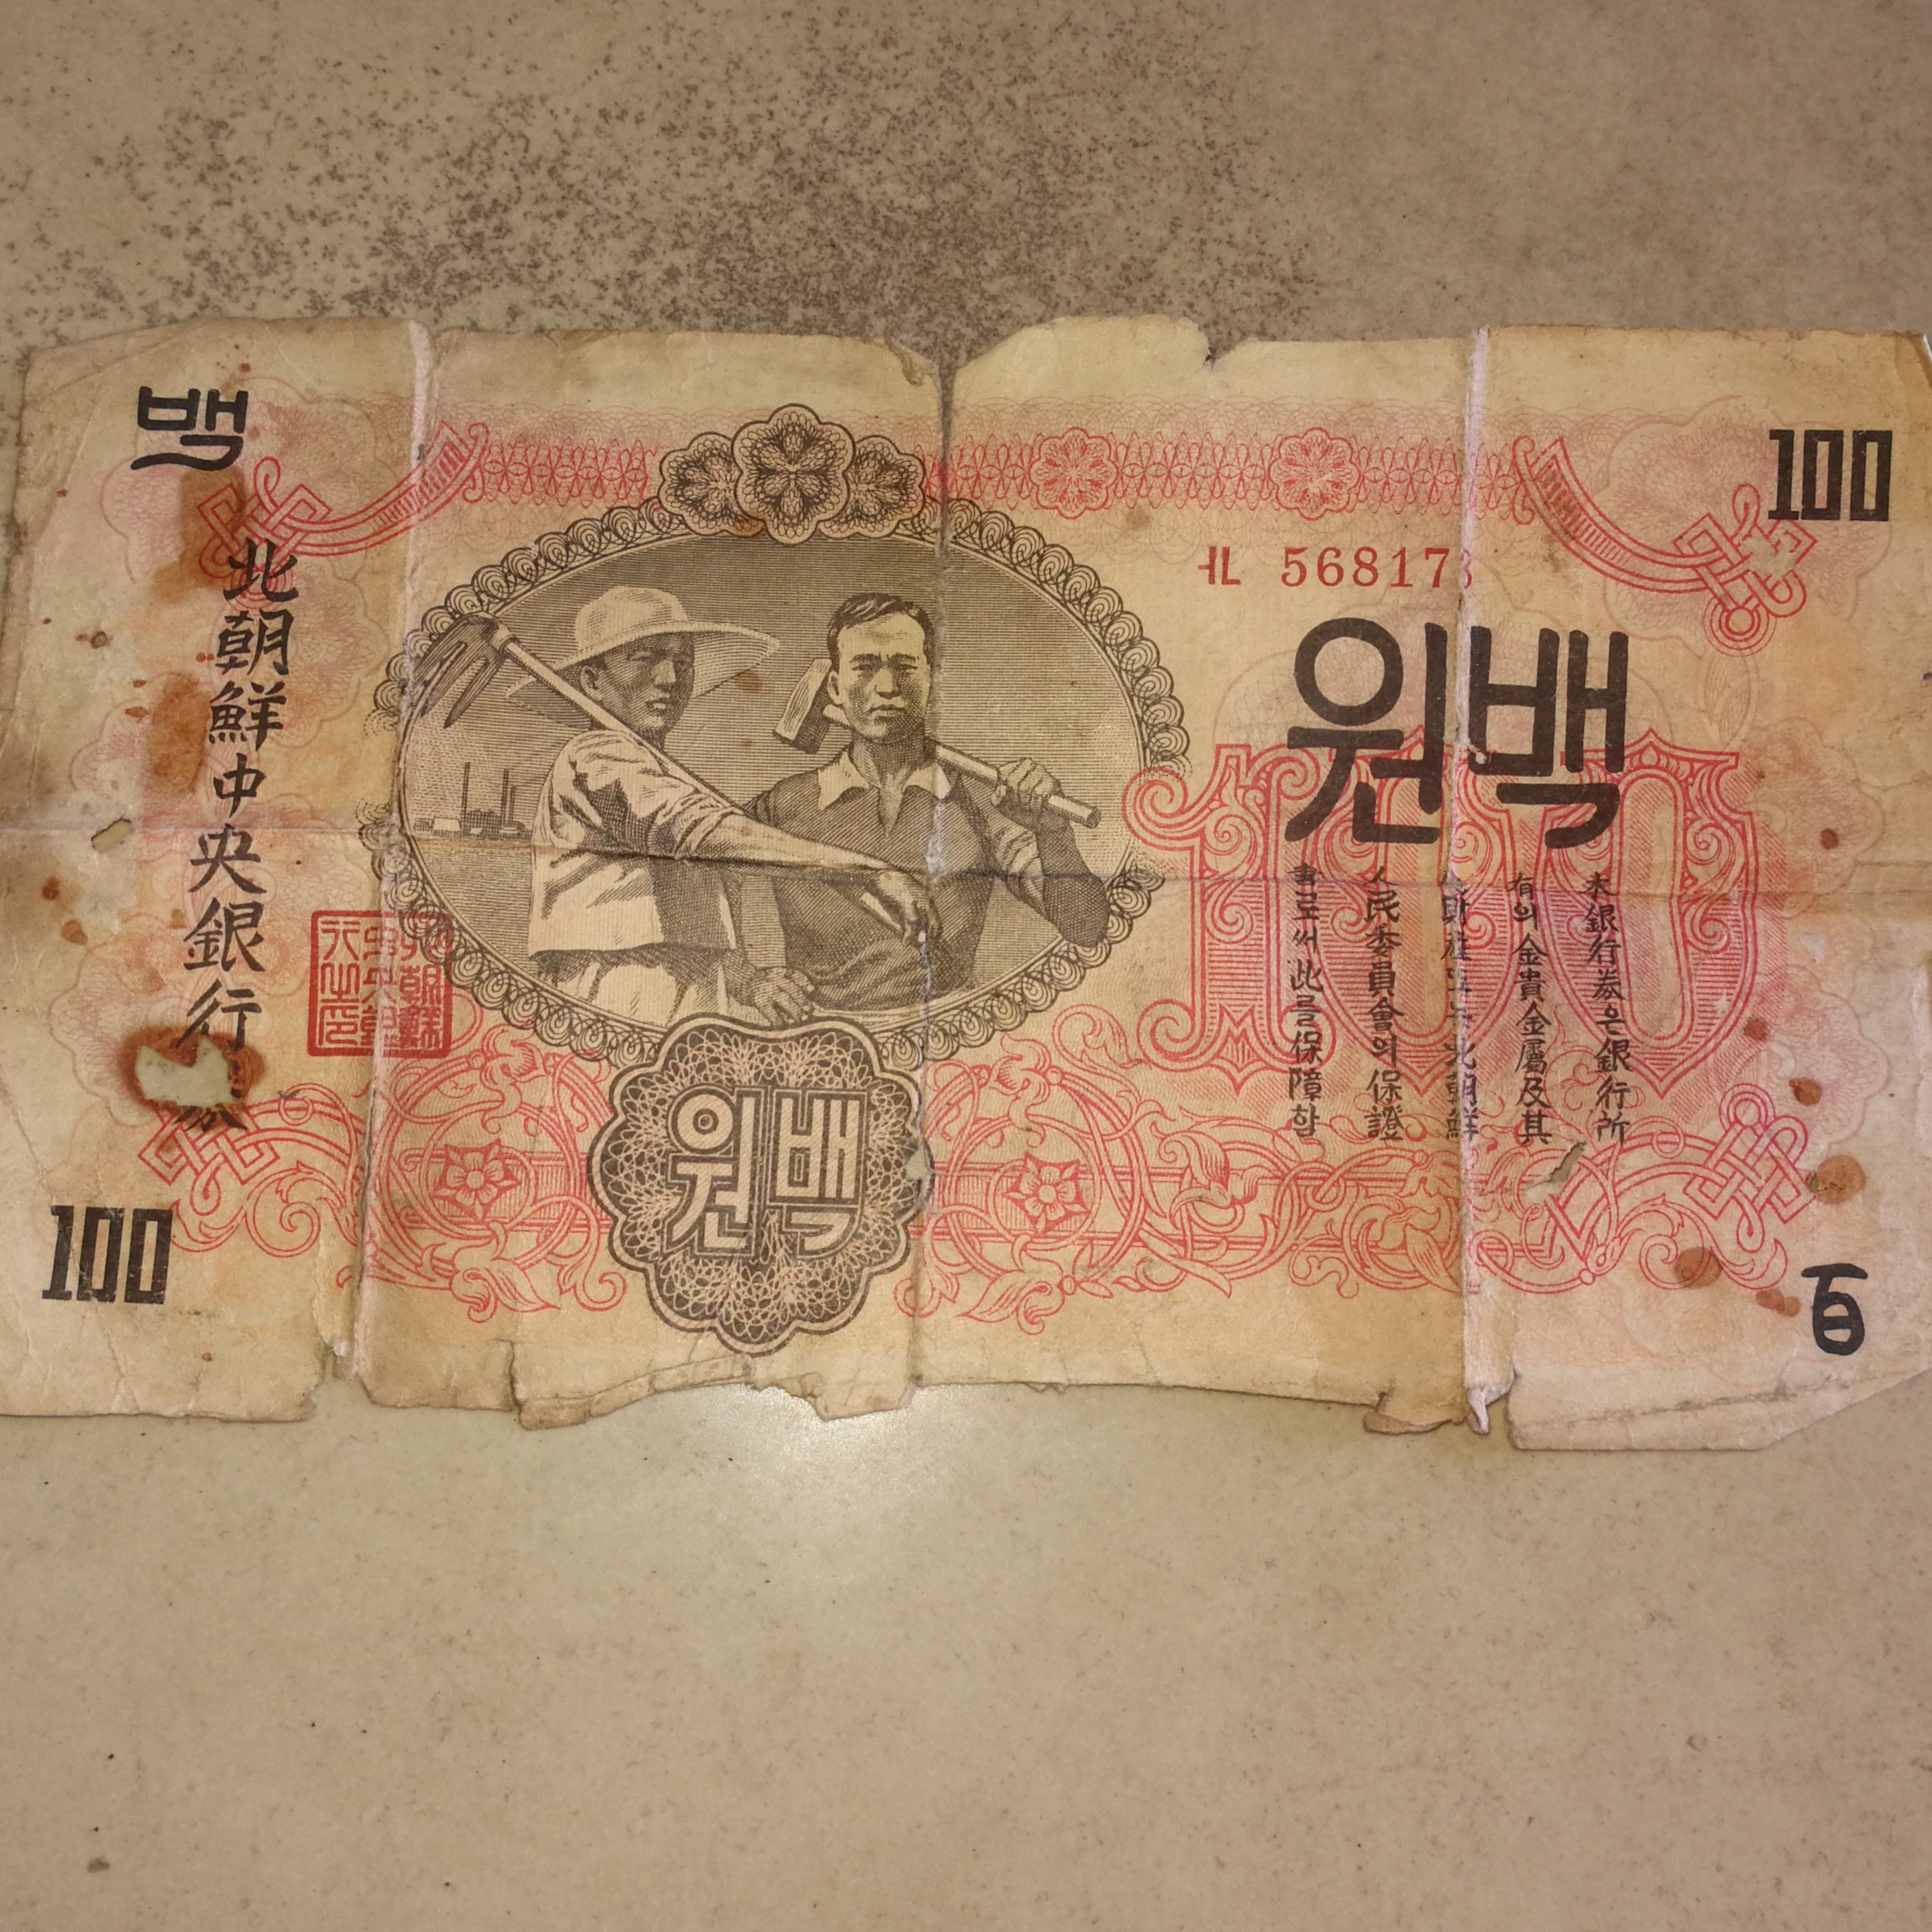 饶弟宽在朝鲜战场立功后获得的“北朝鲜中央银行”百元纸币。长沙晚报全媒体记者 黎铁桥摄